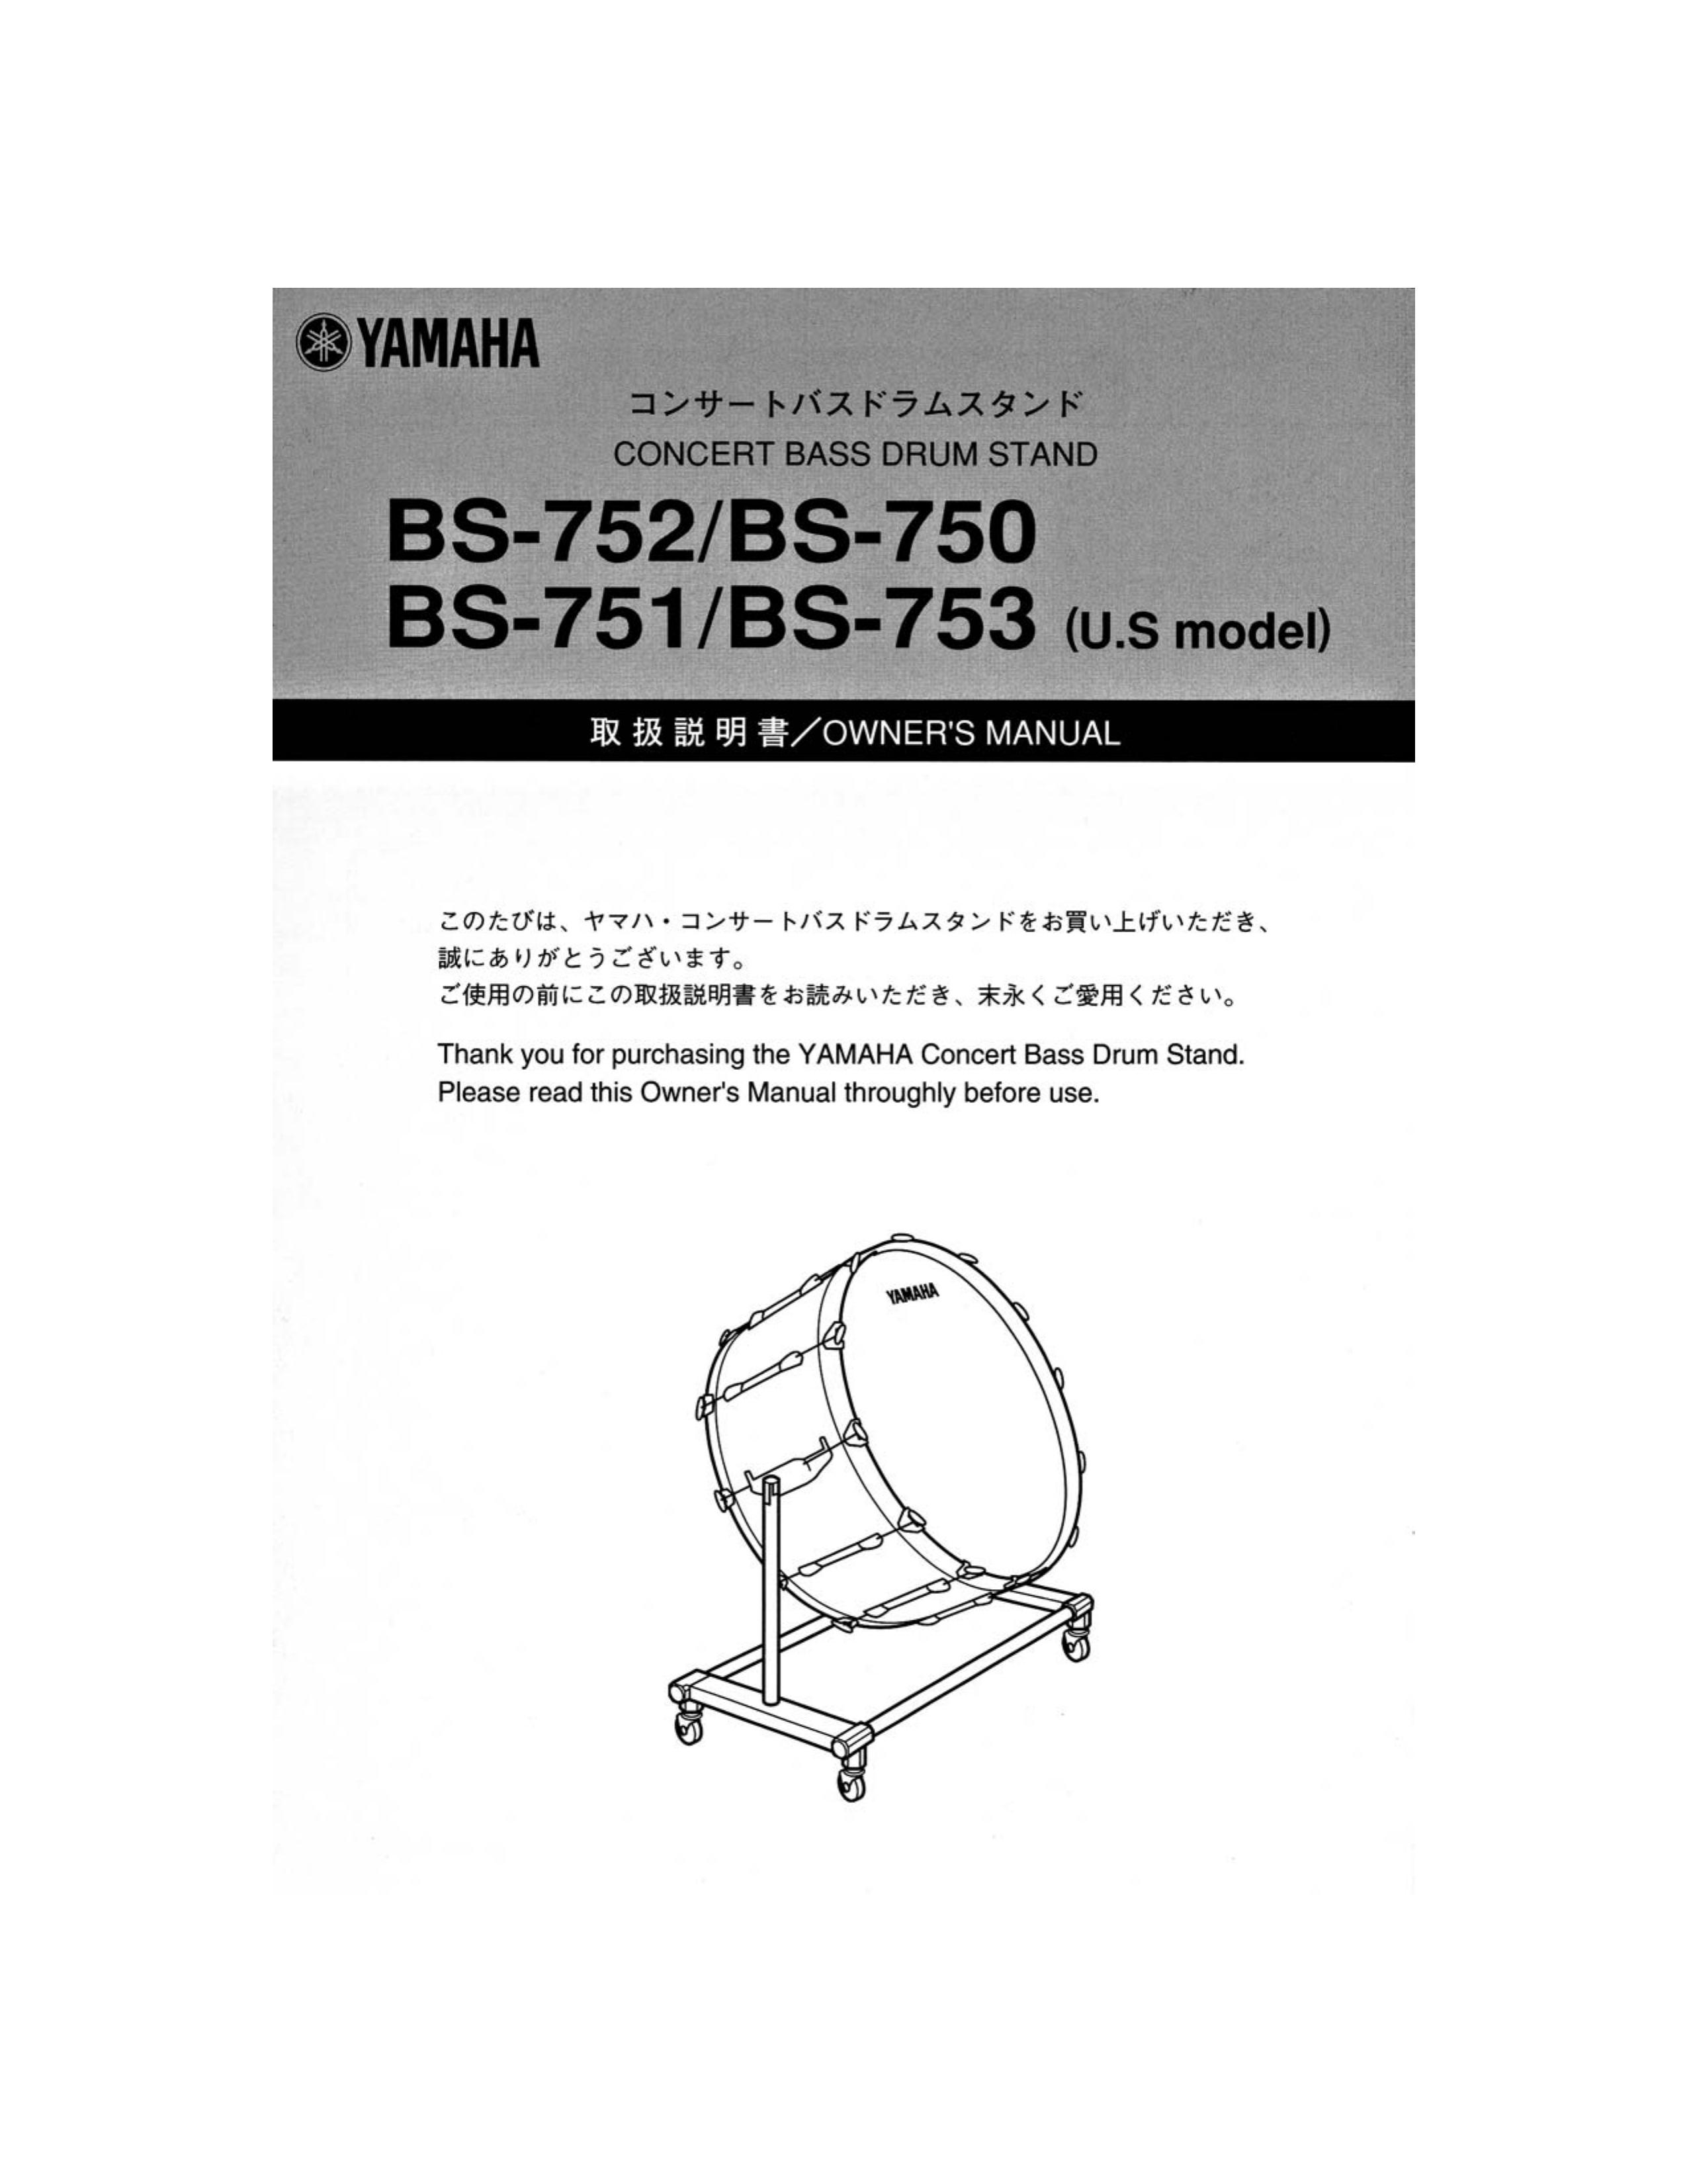 Yamaha BS-752 Drums User Manual